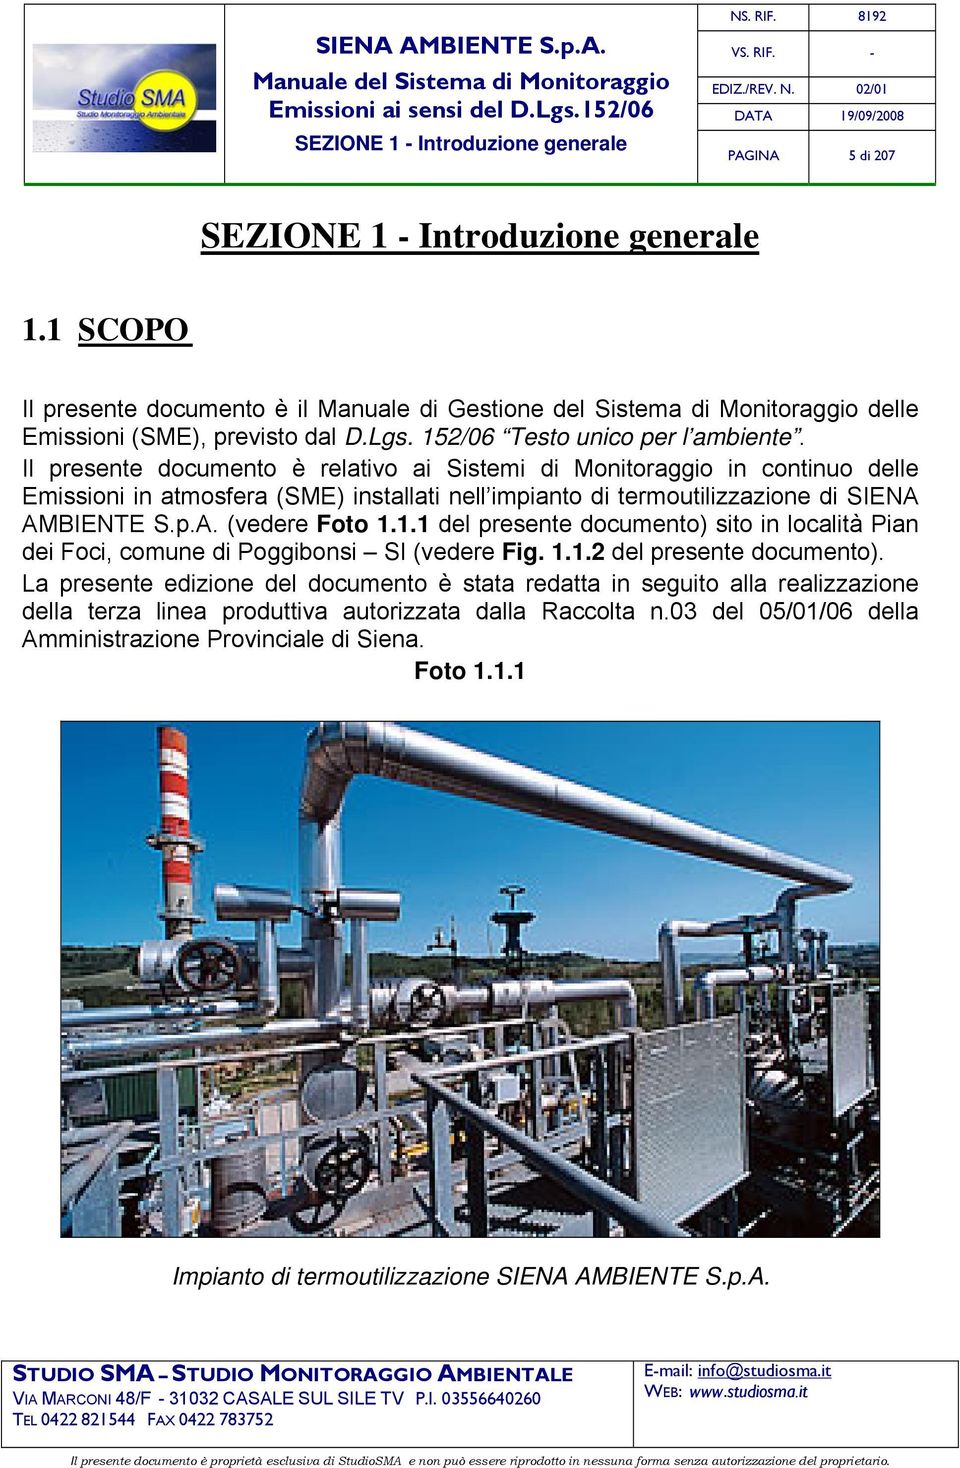 Il presente documento è relativo ai Sistemi di Monitoraggio in continuo delle Emissioni in atmosfera (SME) installati nell impianto di termoutilizzazione di SIENA AMBIENTE S.p.A. (vedere Foto 1.